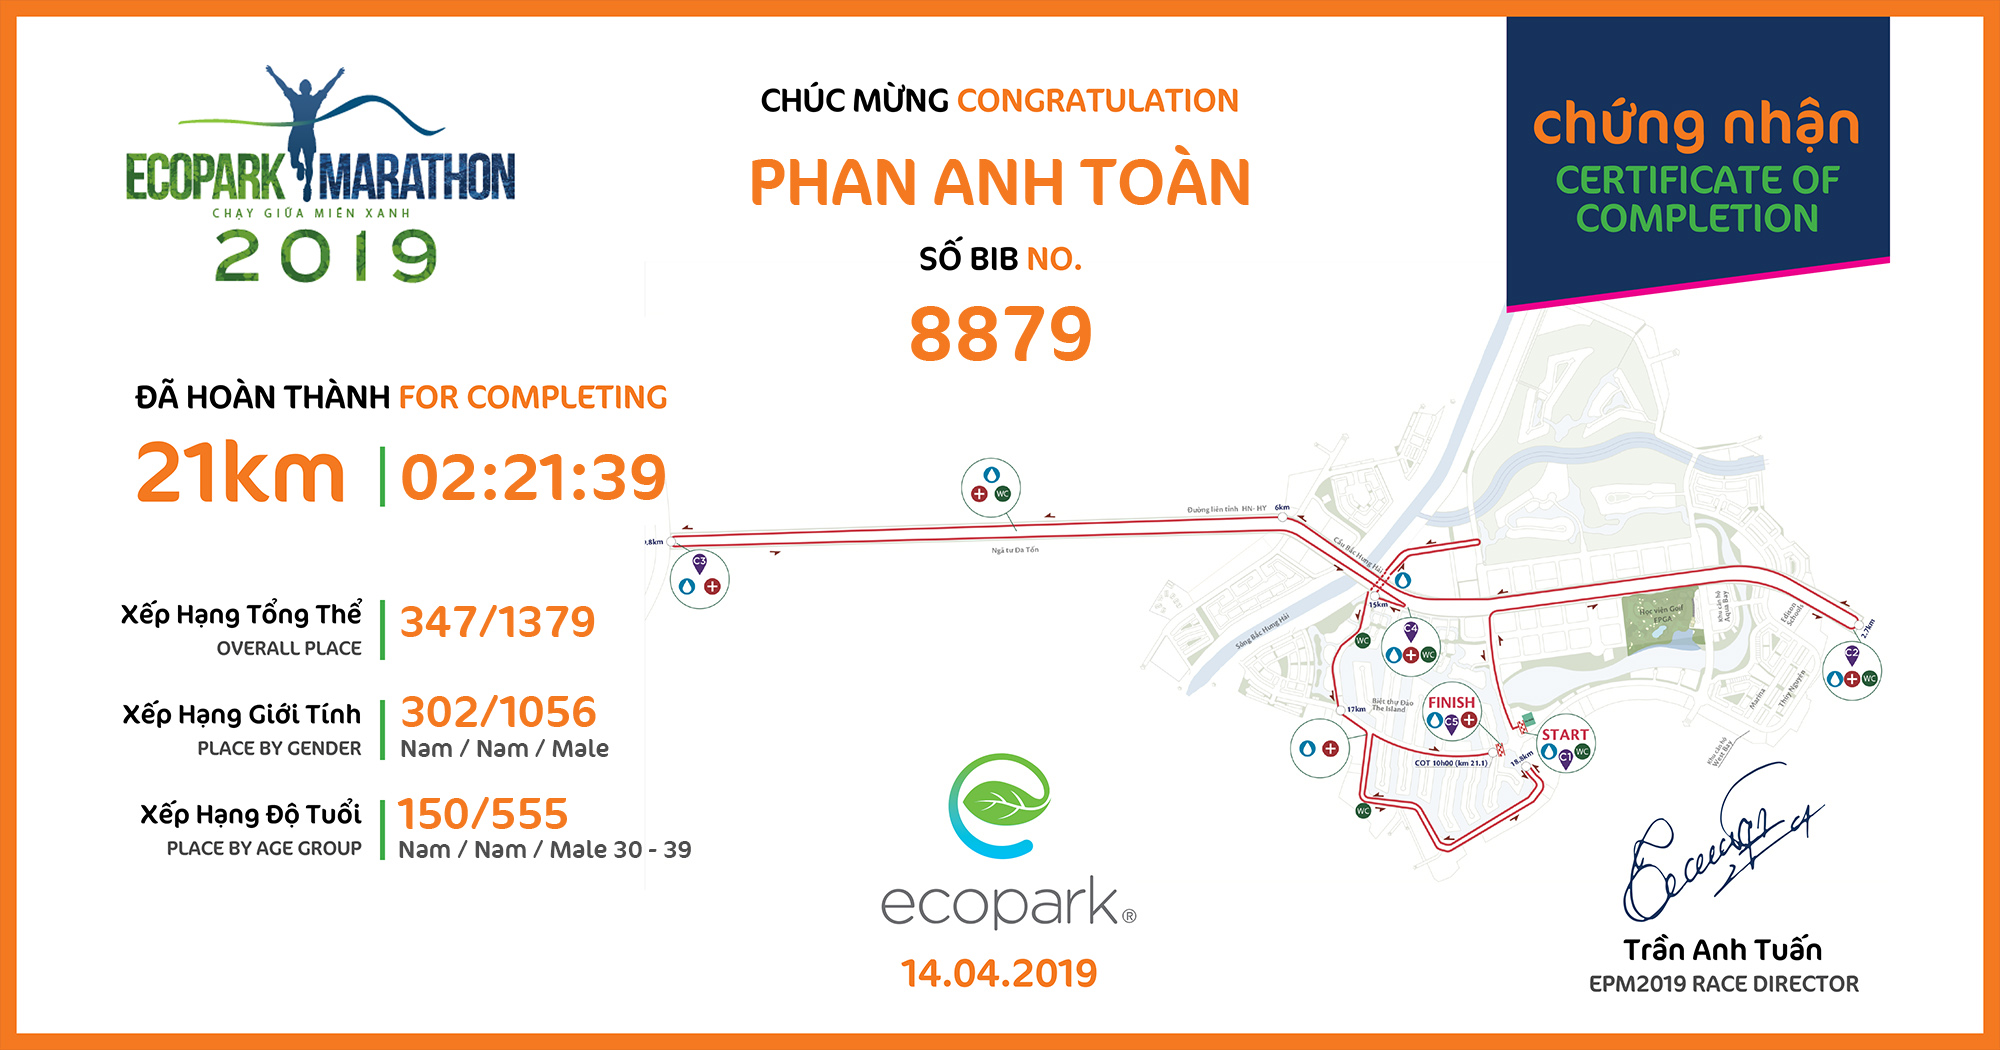 8879 - Phan Anh Toàn